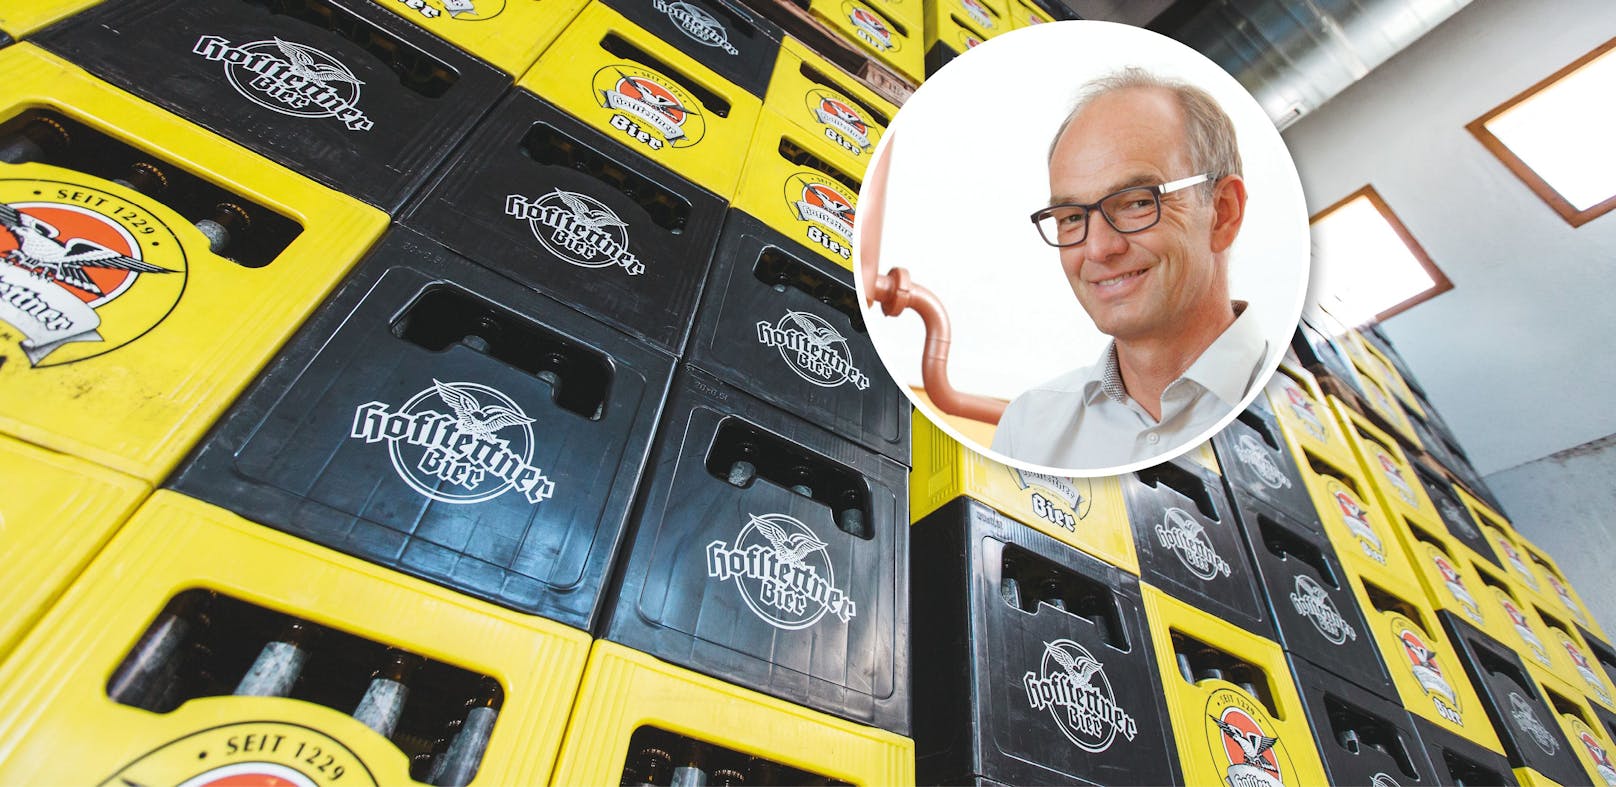 Brauerei-Chef hat traurige Nachricht für alle Bier-Fans